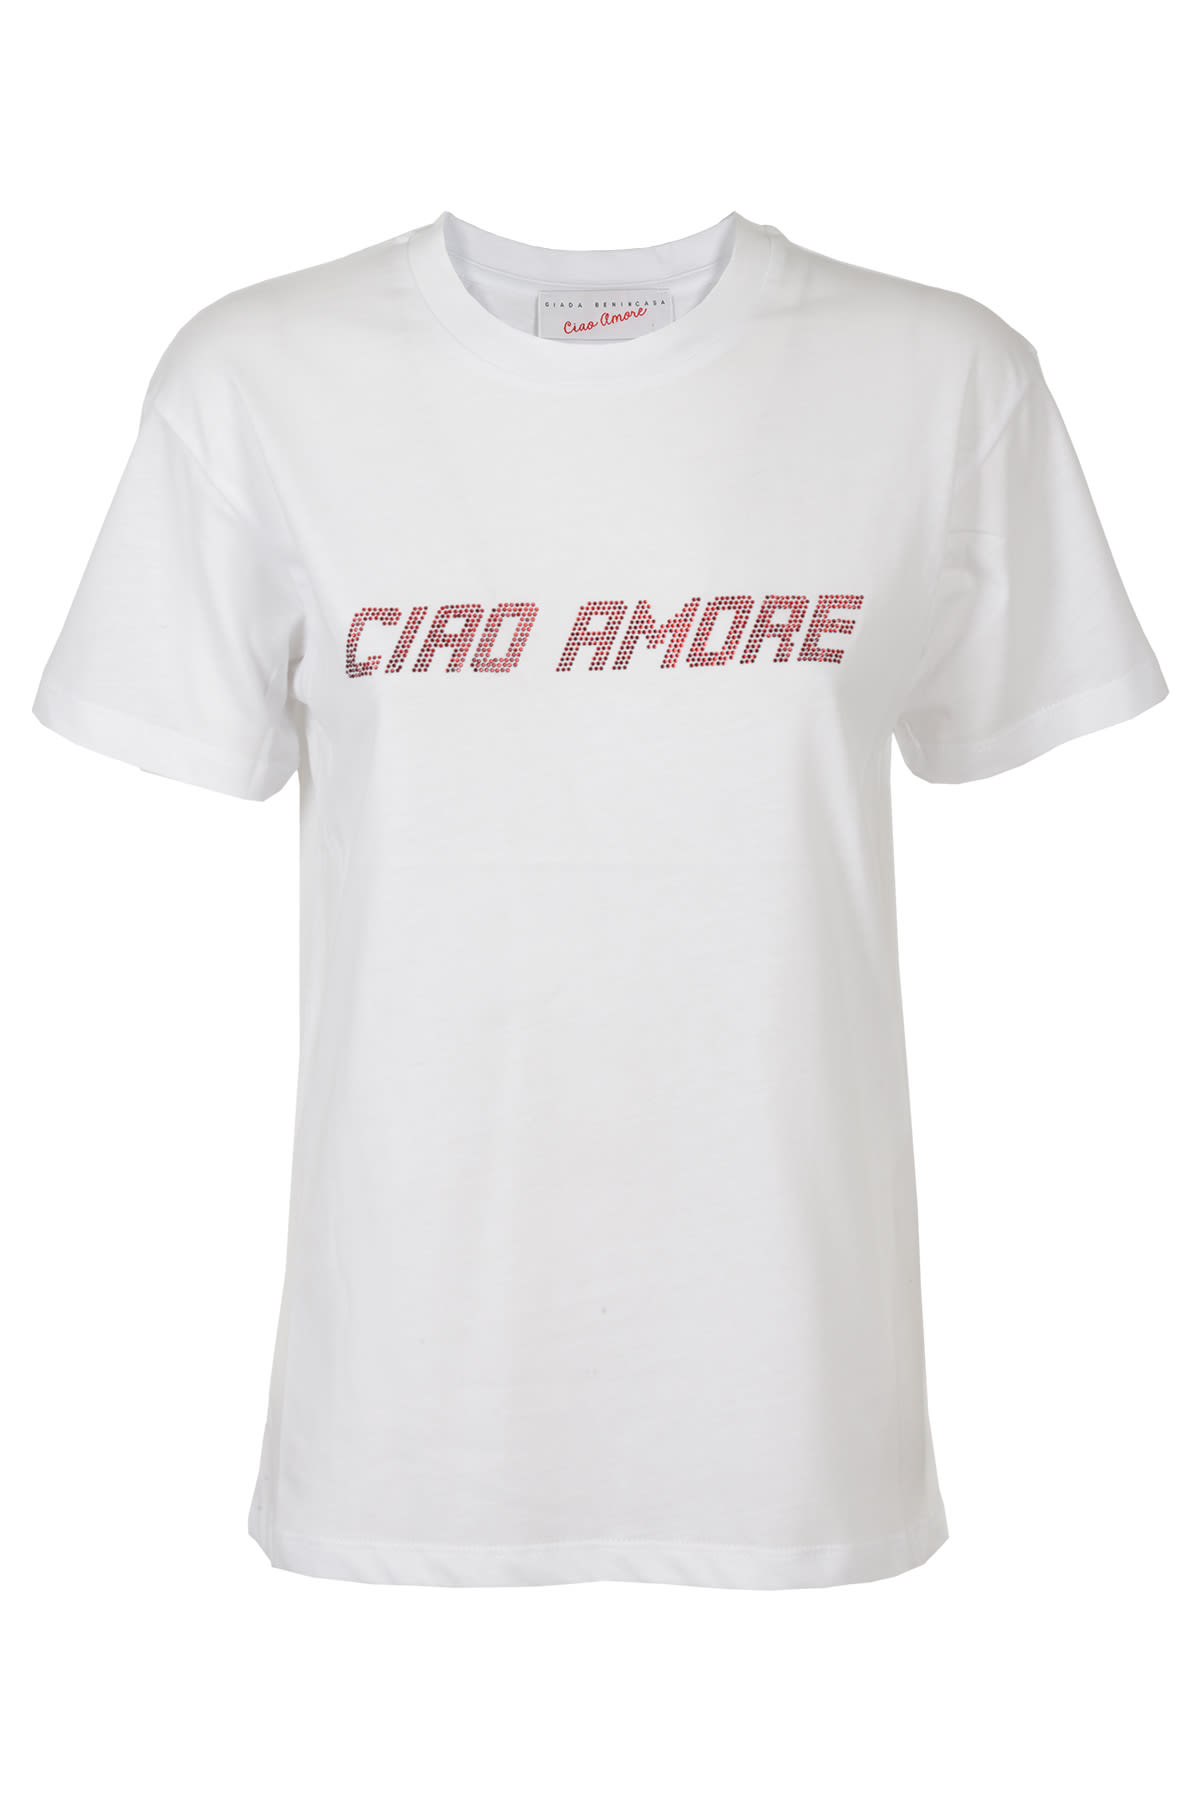 Giada Benincasa Studded Ciao Amore Regular T-shirt